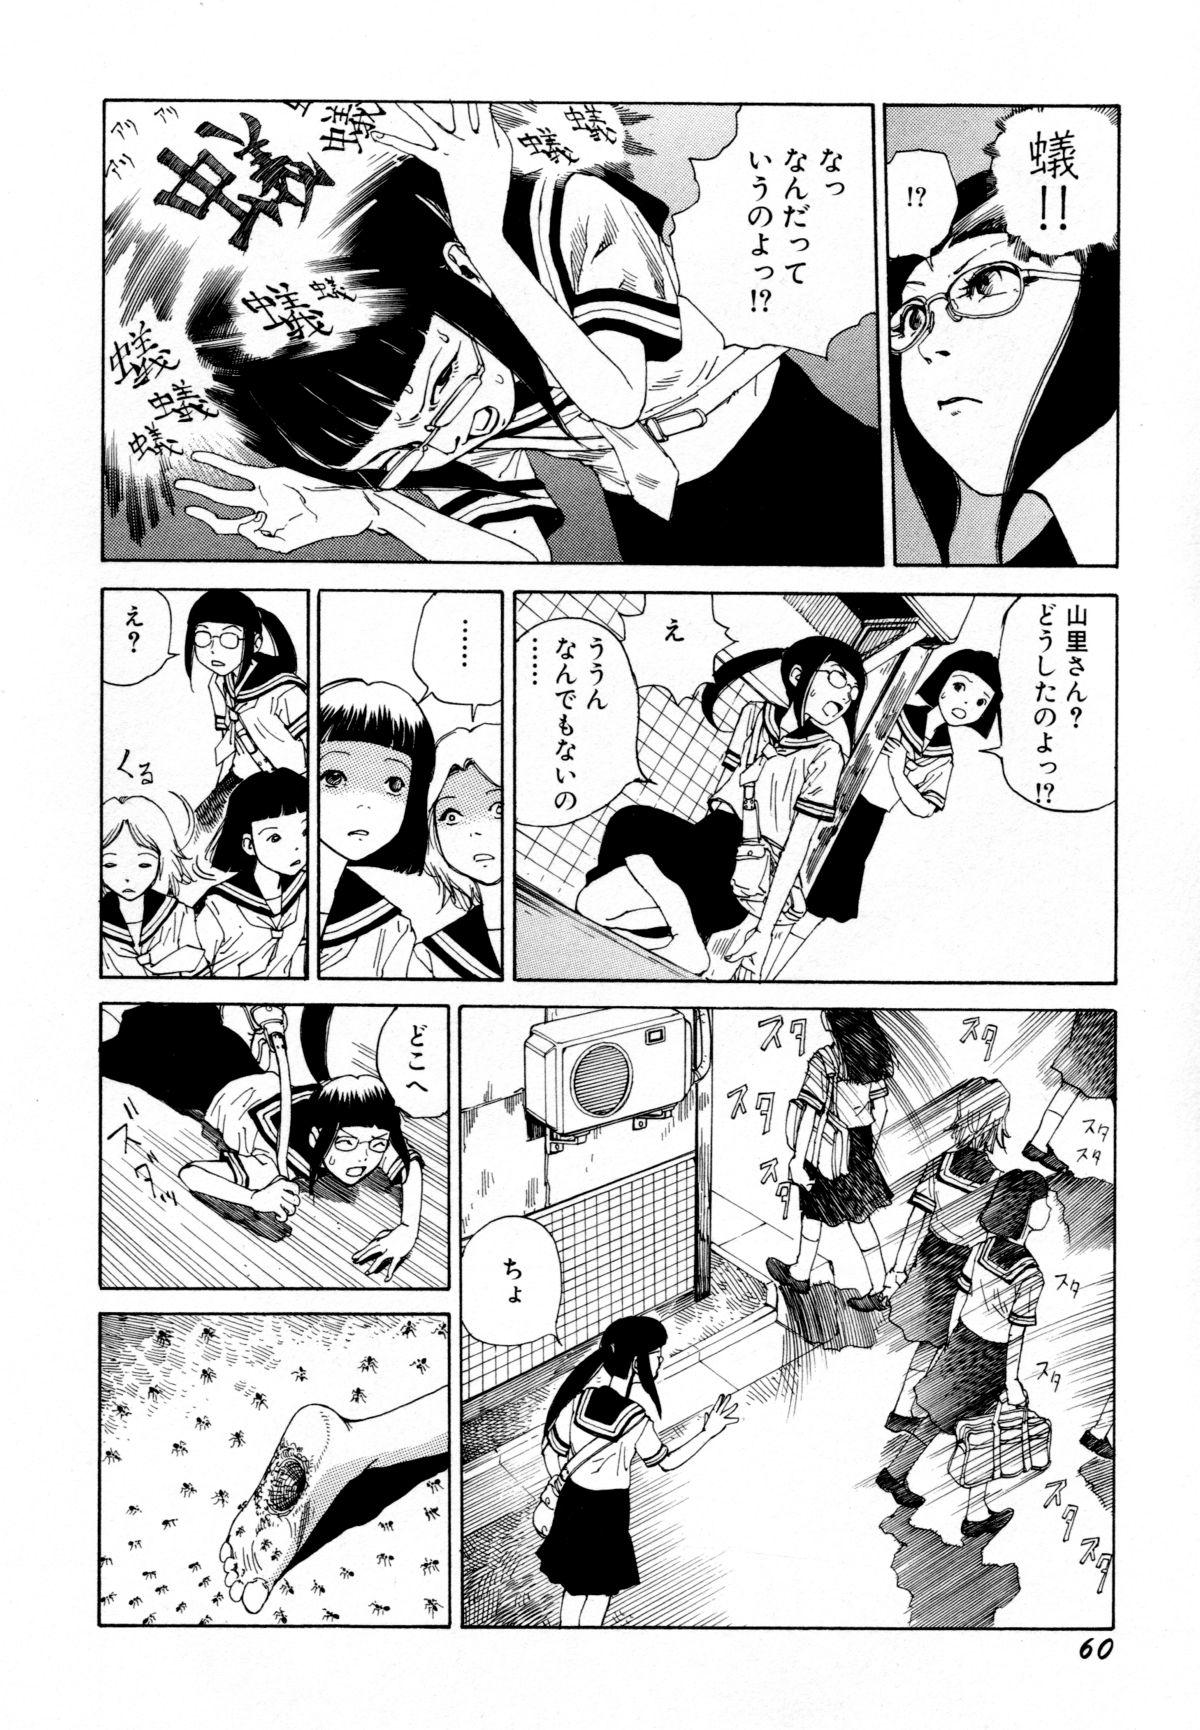 Arijigoku vs Barabara Shoujo - Antlion vs BaraBara Girl 61